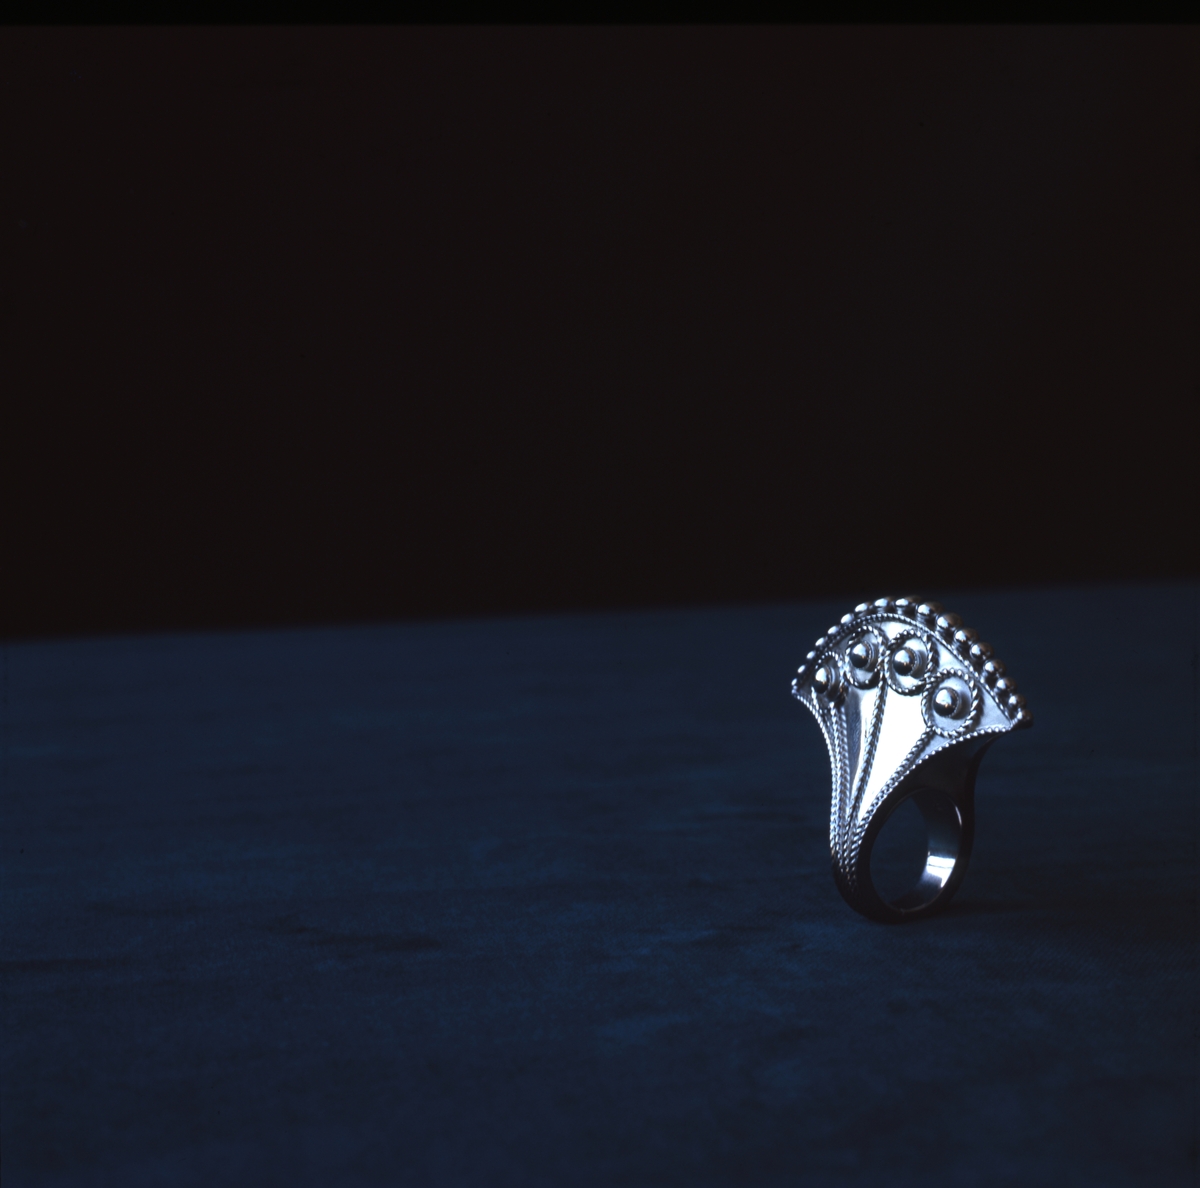 Silverring tillverkad av Rosa Taikon fotograferad mot mörk bakgrund. Ringen består av silverplåt formad som en yxa, en form som Taikon ofta använder i sina verk. Ringen är dekorerad med filigrantråd och granuler.